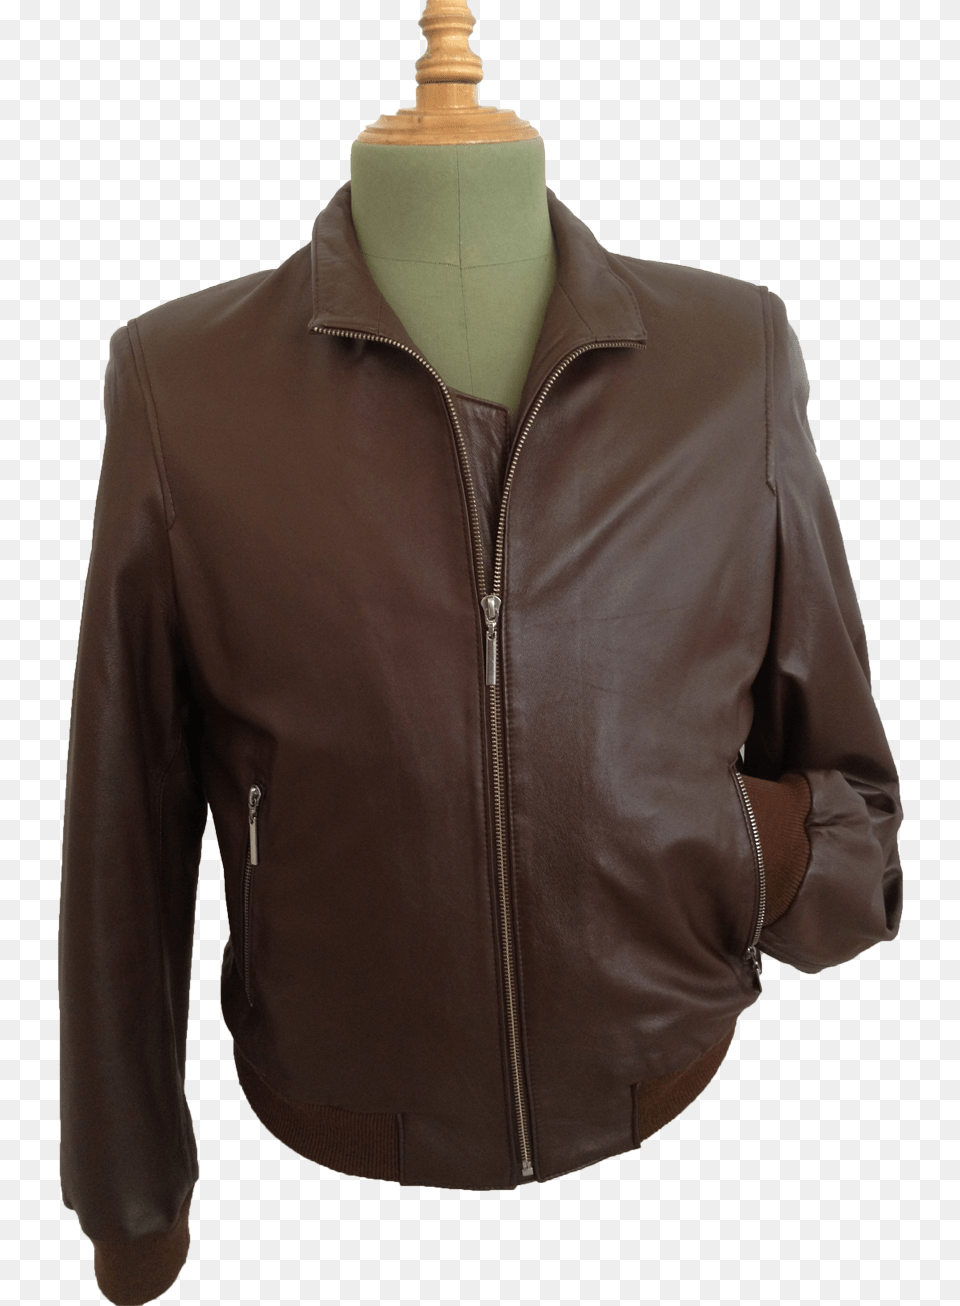 Nappa Leather Jacket Man Jacket, Clothing, Coat, Leather Jacket Free Transparent Png